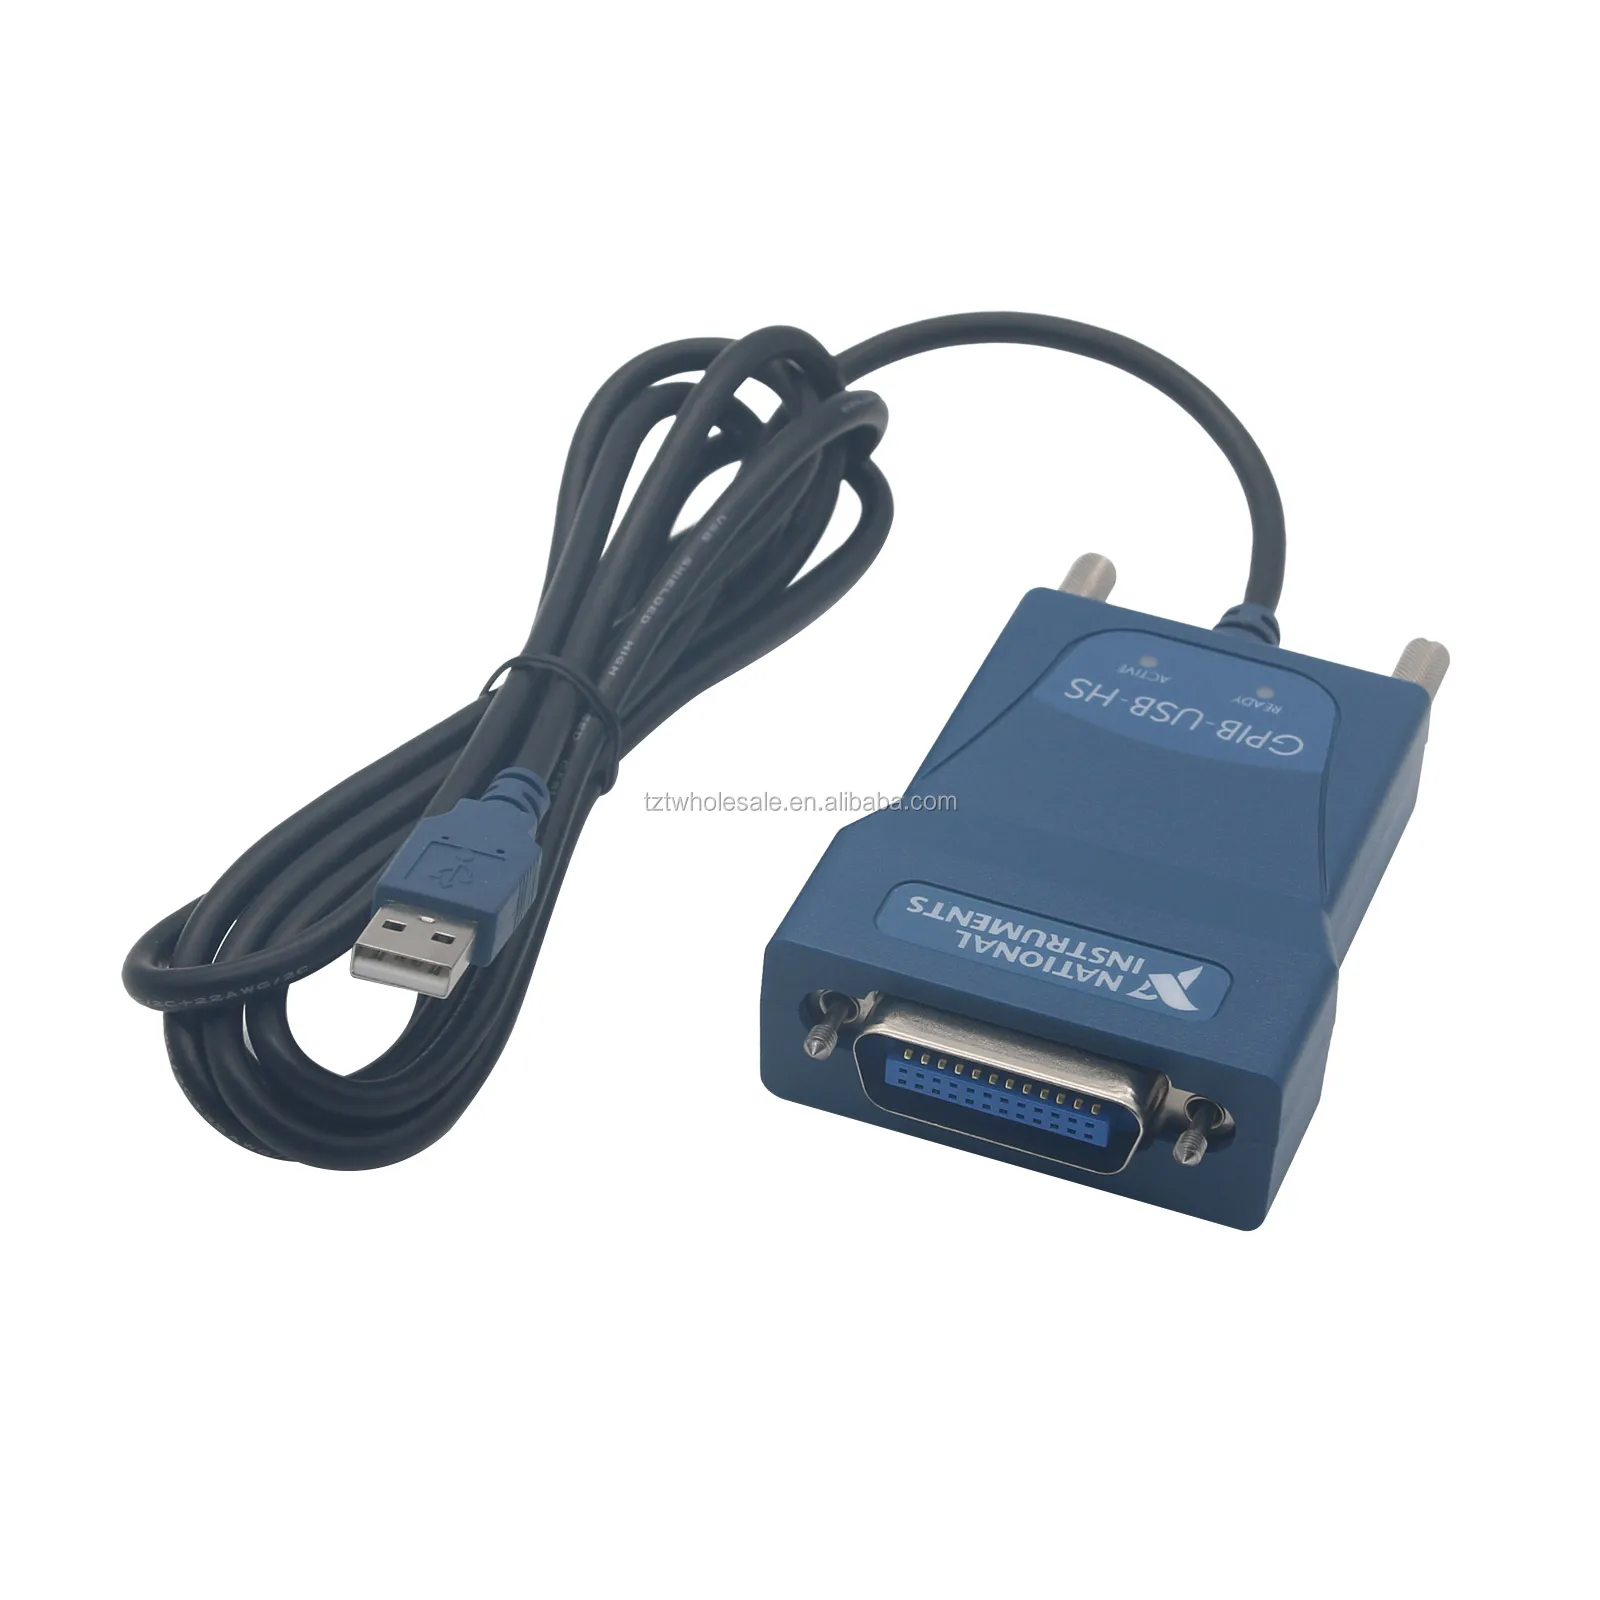 ショッピング大セール NI USB-GPIBコントローラ GPIB-USB-HS PC周辺機器